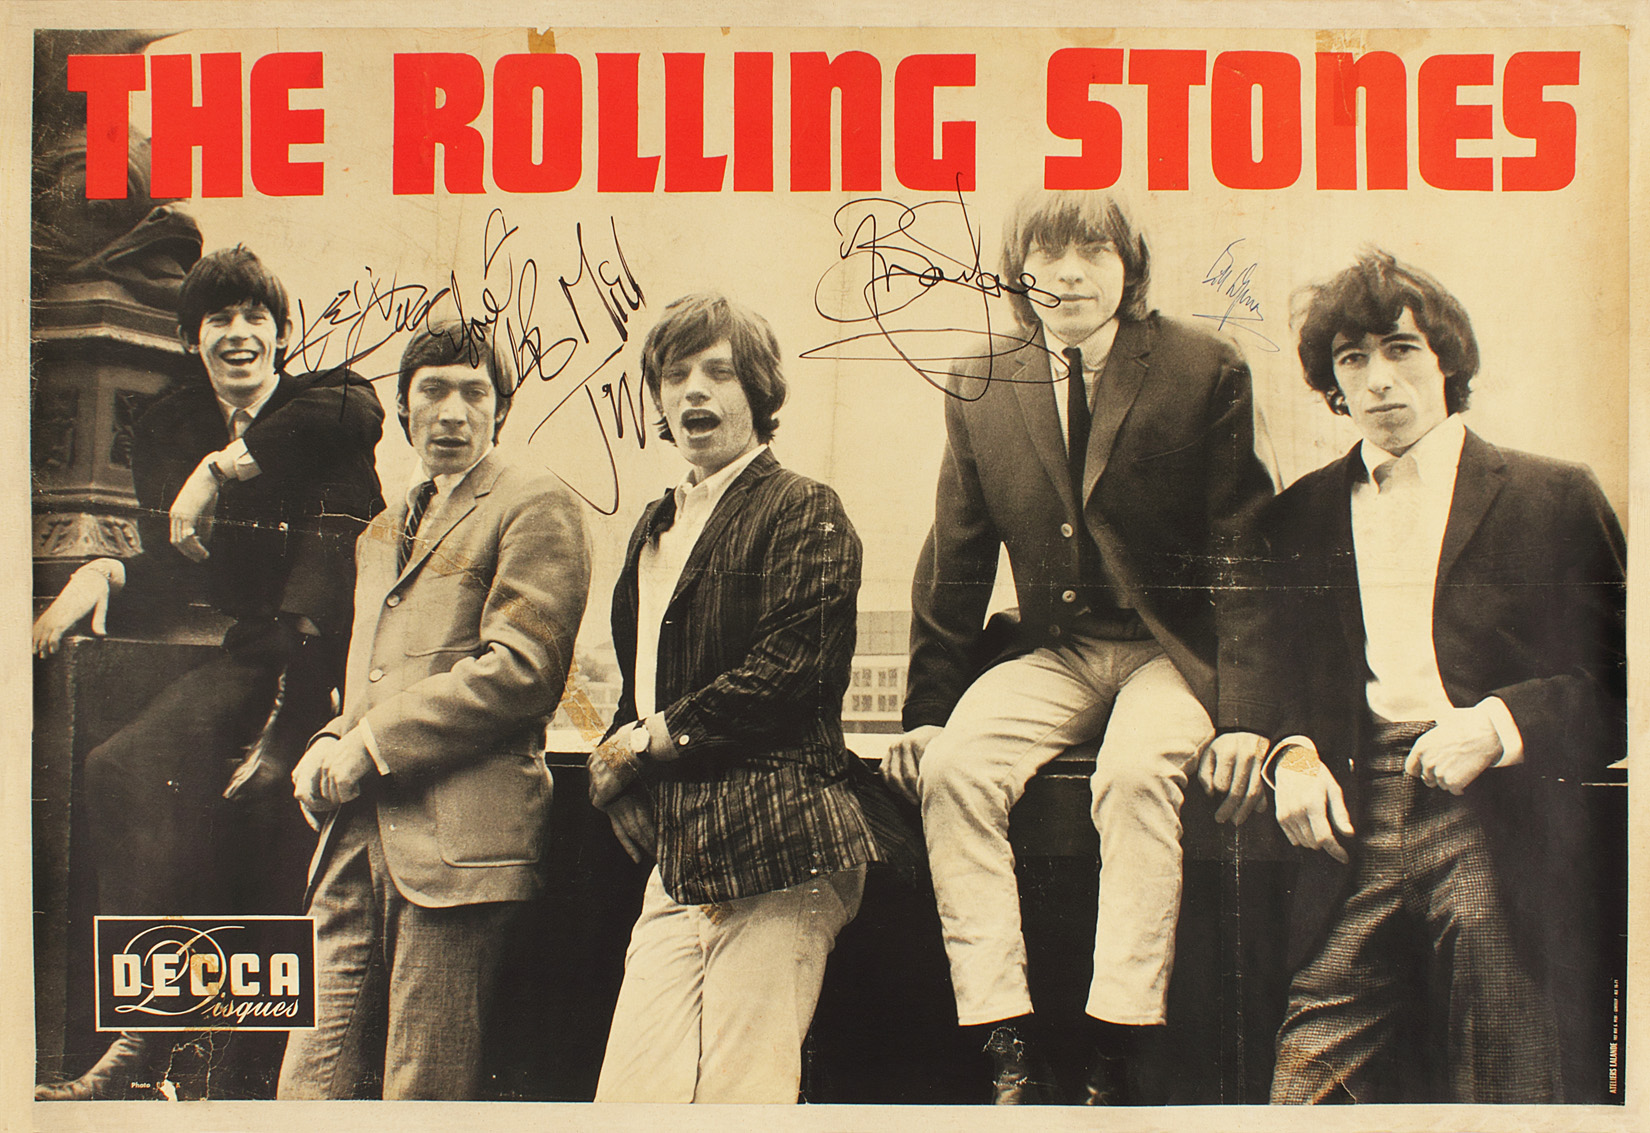 Rolling stones song stoned. Группа Роллинг стоунз. Группа Роллинг стоунз 1962. Группа the Rolling Stones постеры. Плакат Роллинг стоунз.